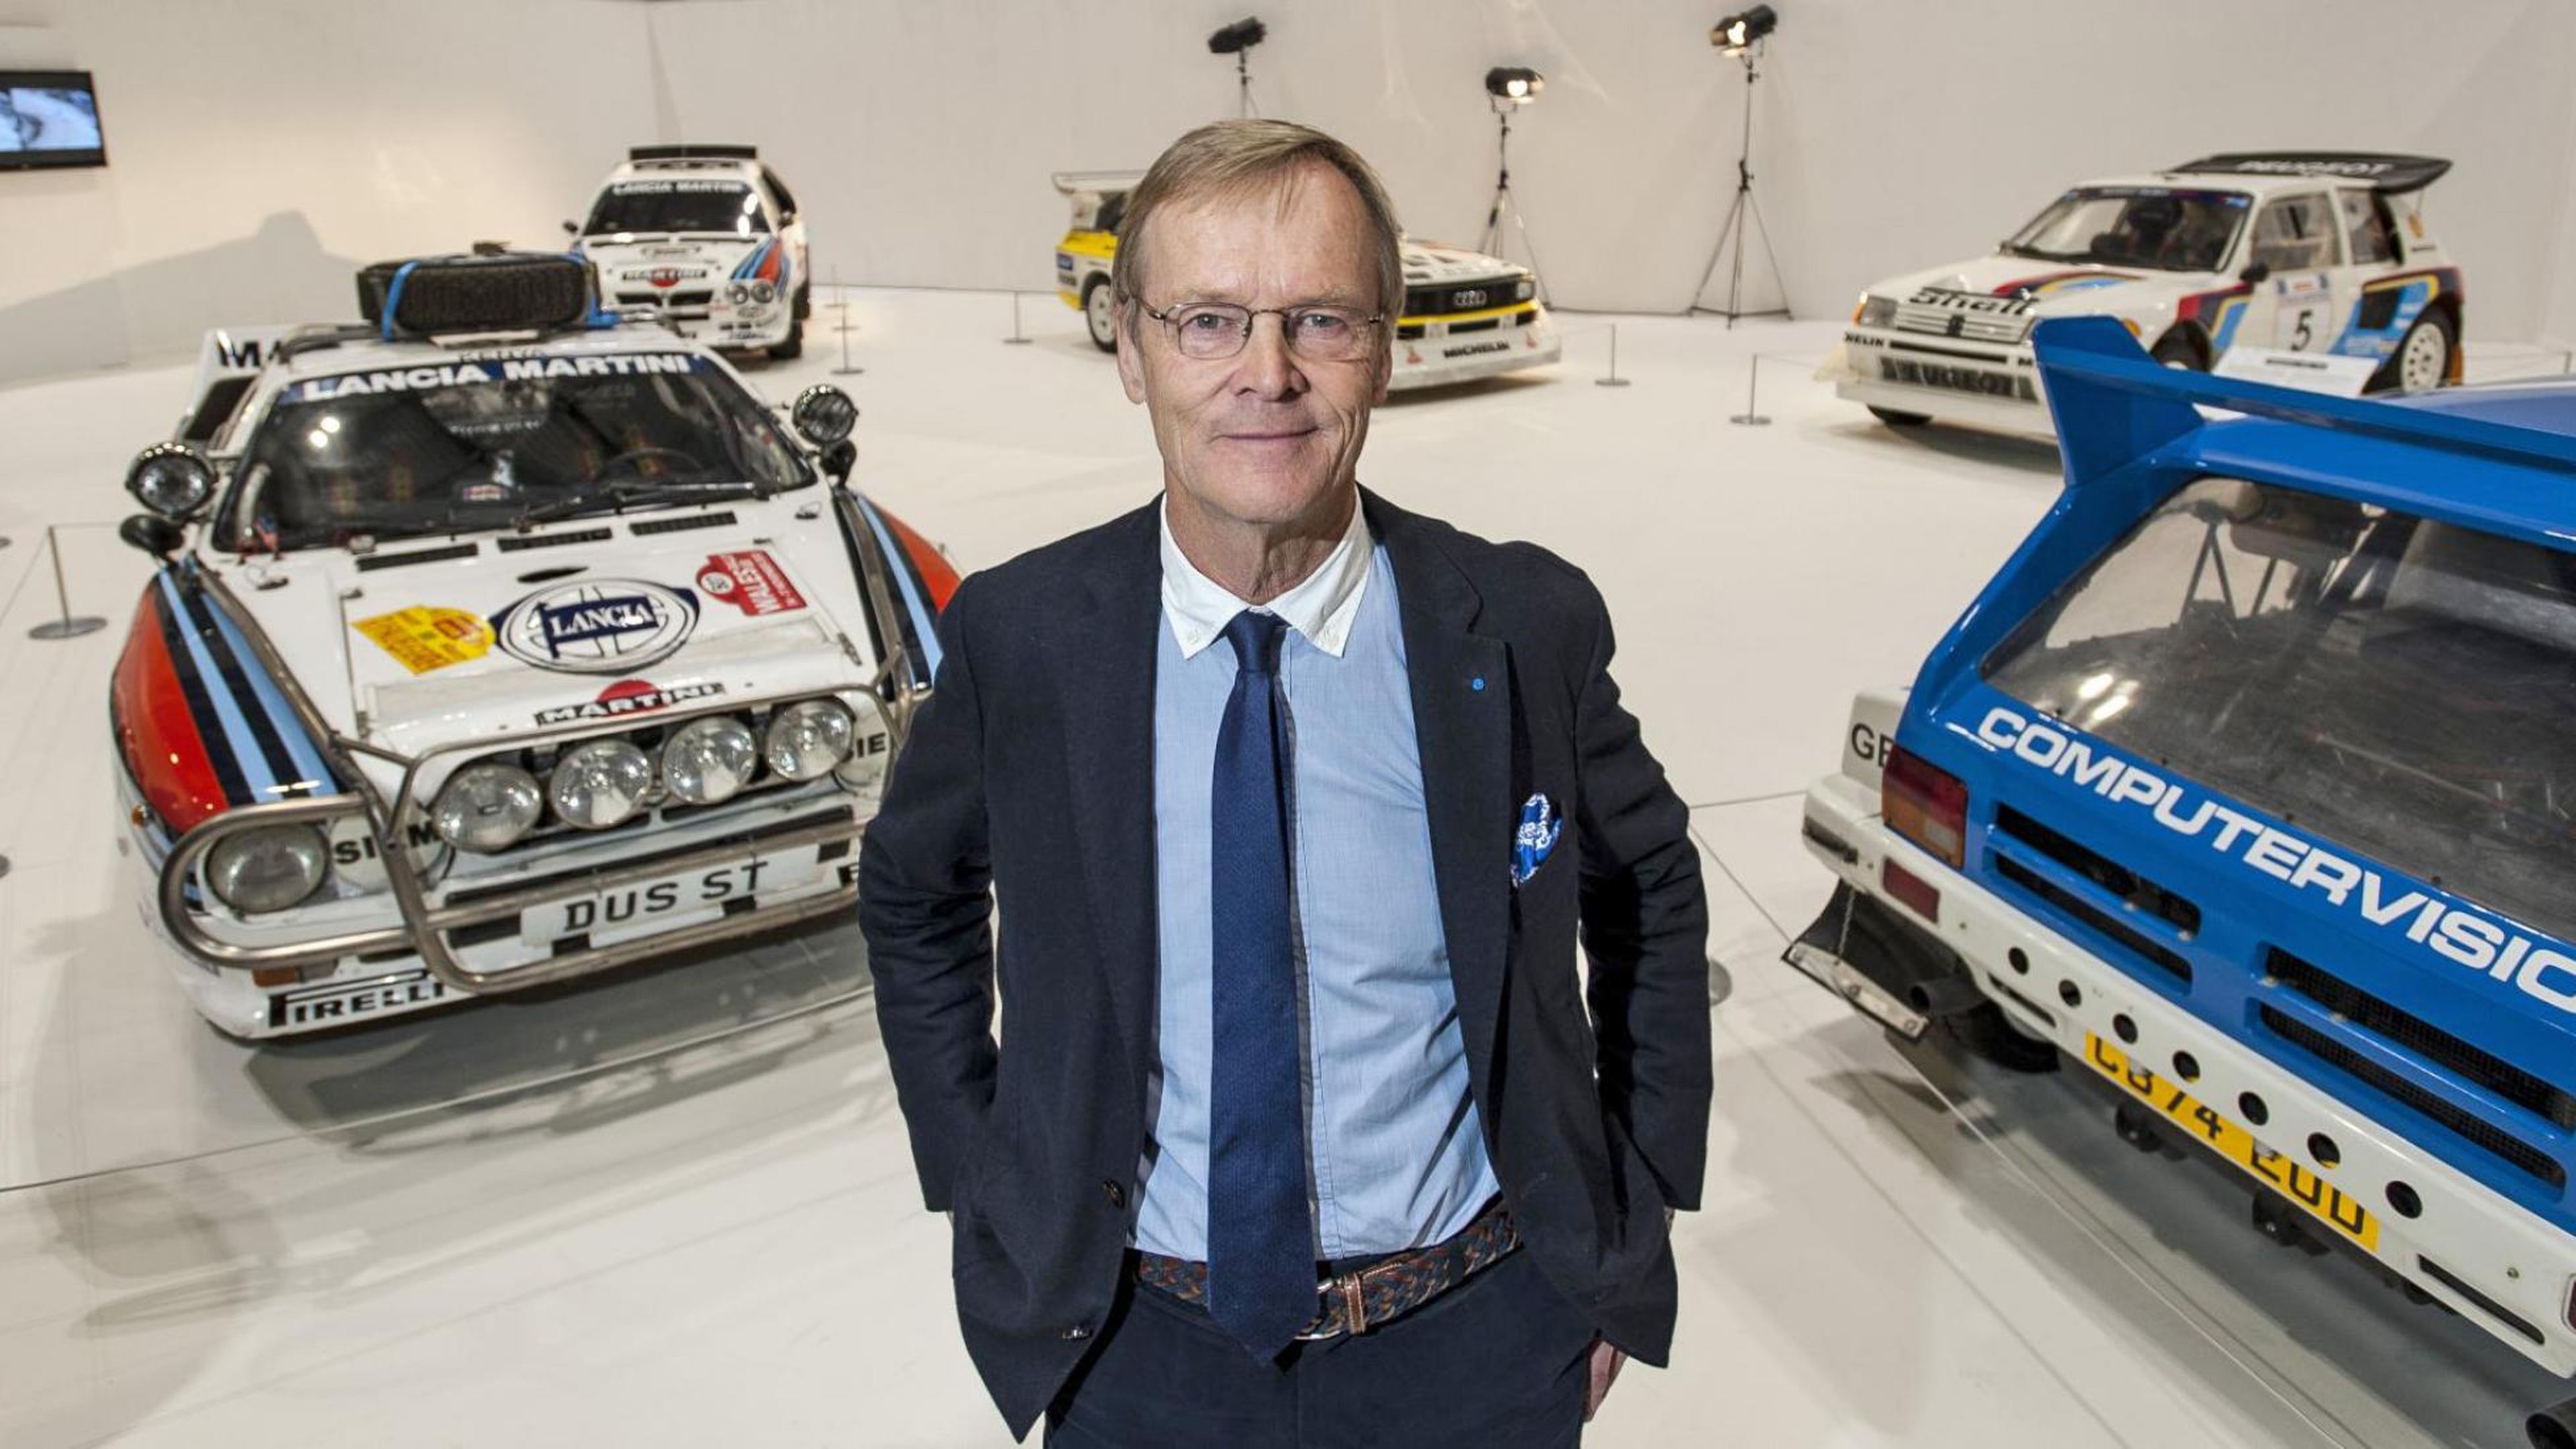 Ari Vatanen ha ganado más de 500 etapas, 10 rallys y un campeonato del mundo de rallys